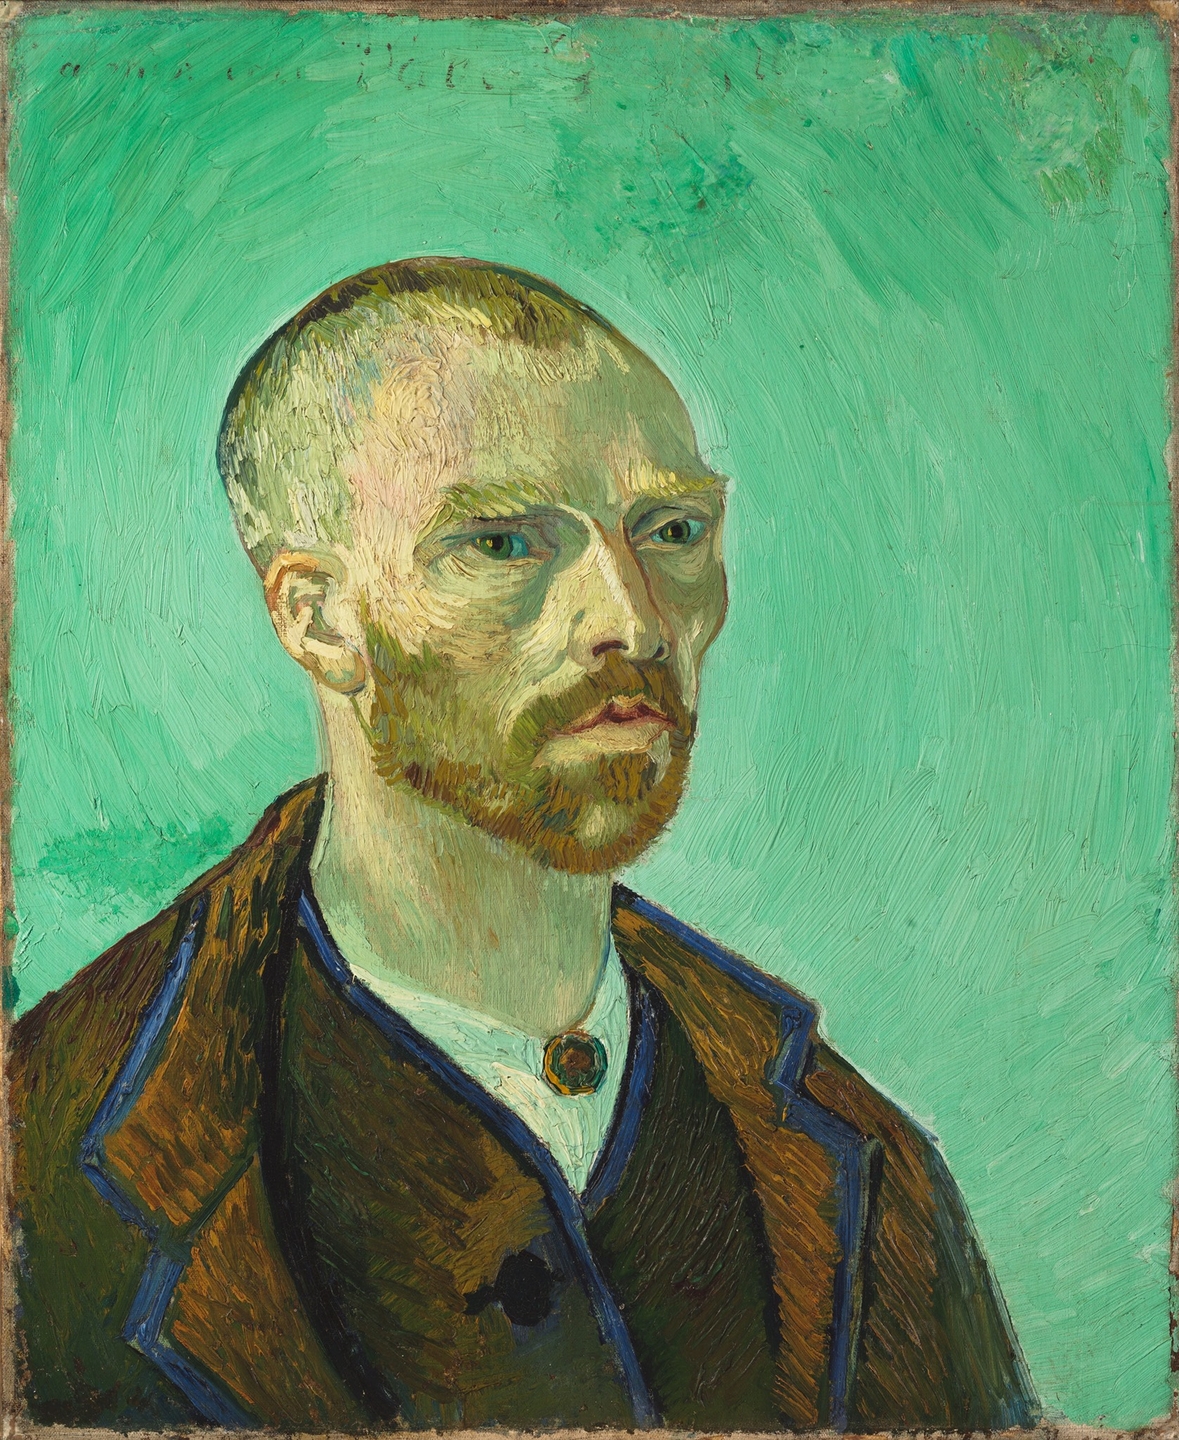 Did Van Gogh need friends?